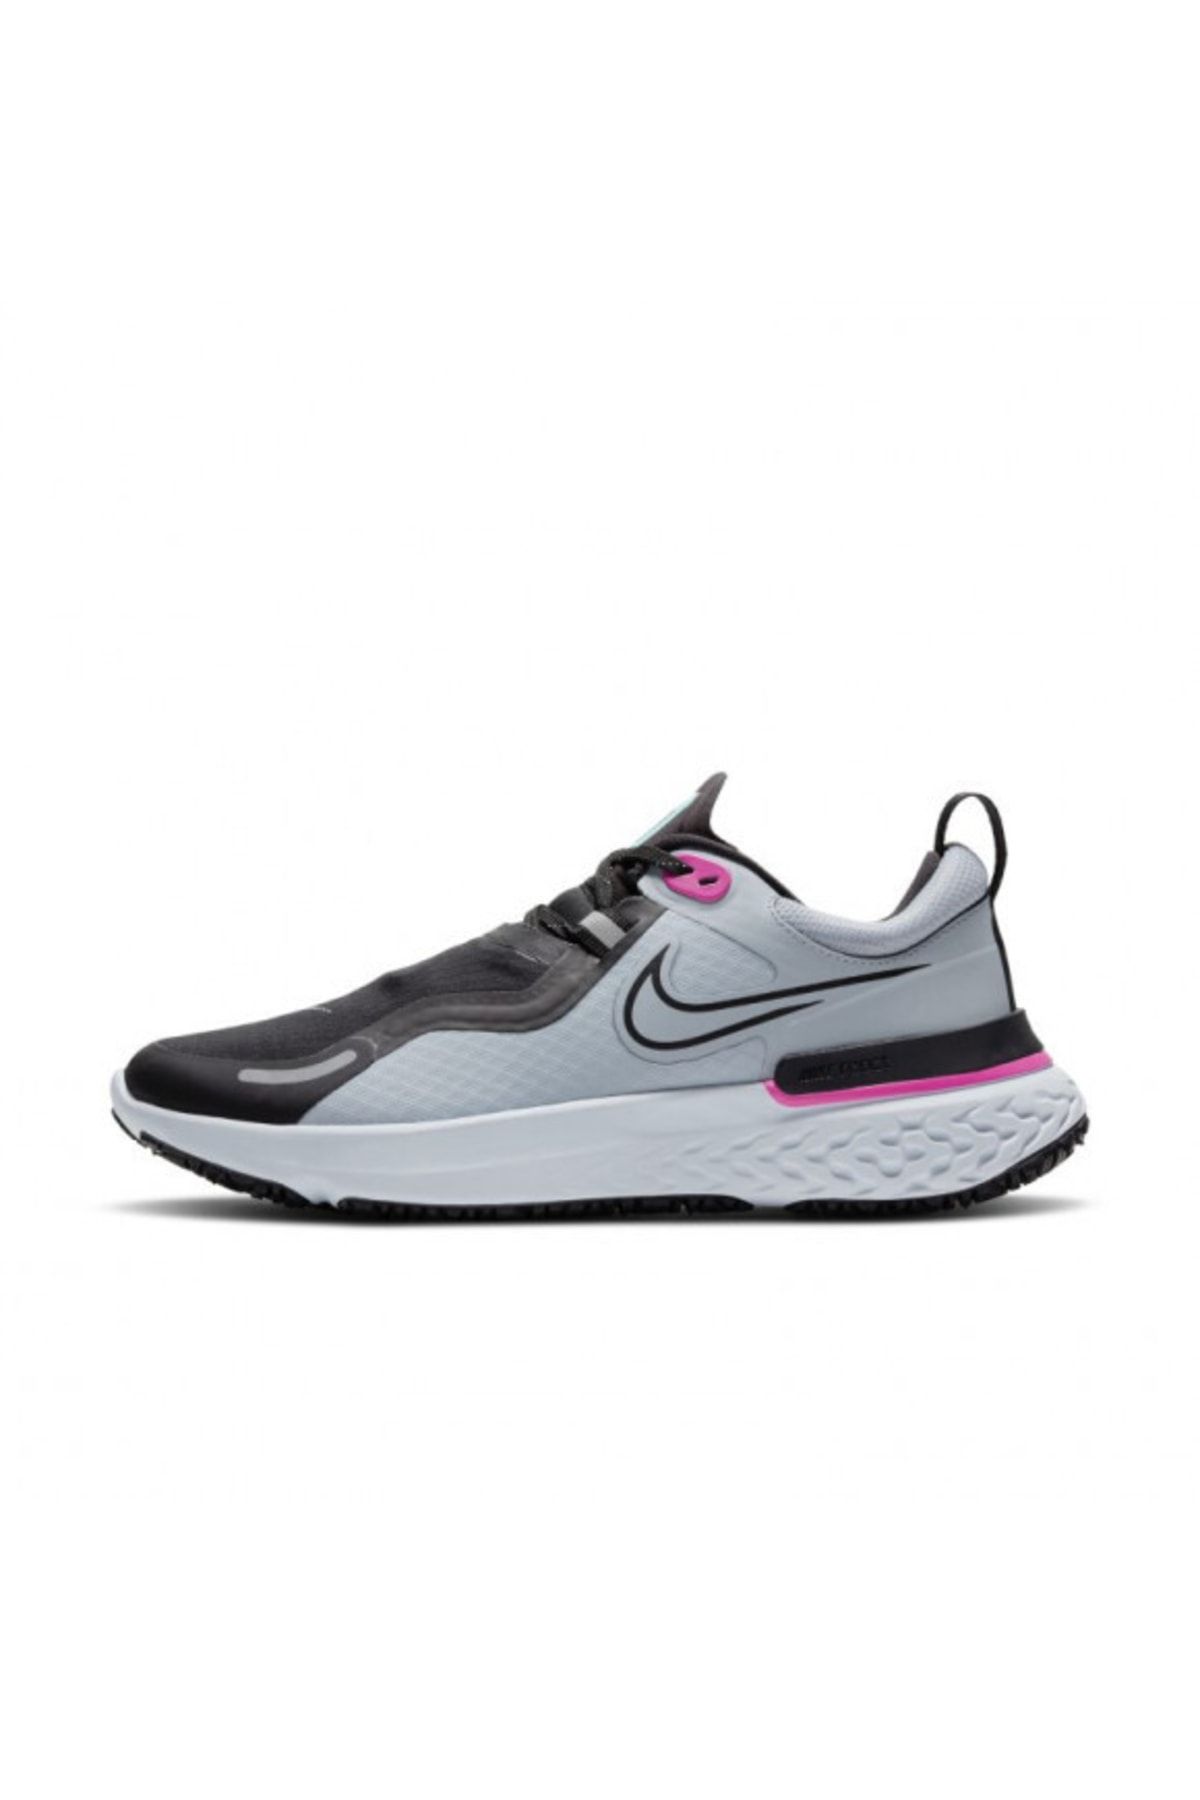 Nike React Miler Shield Kadın Koşu Ayakkabısı Cq8249-400